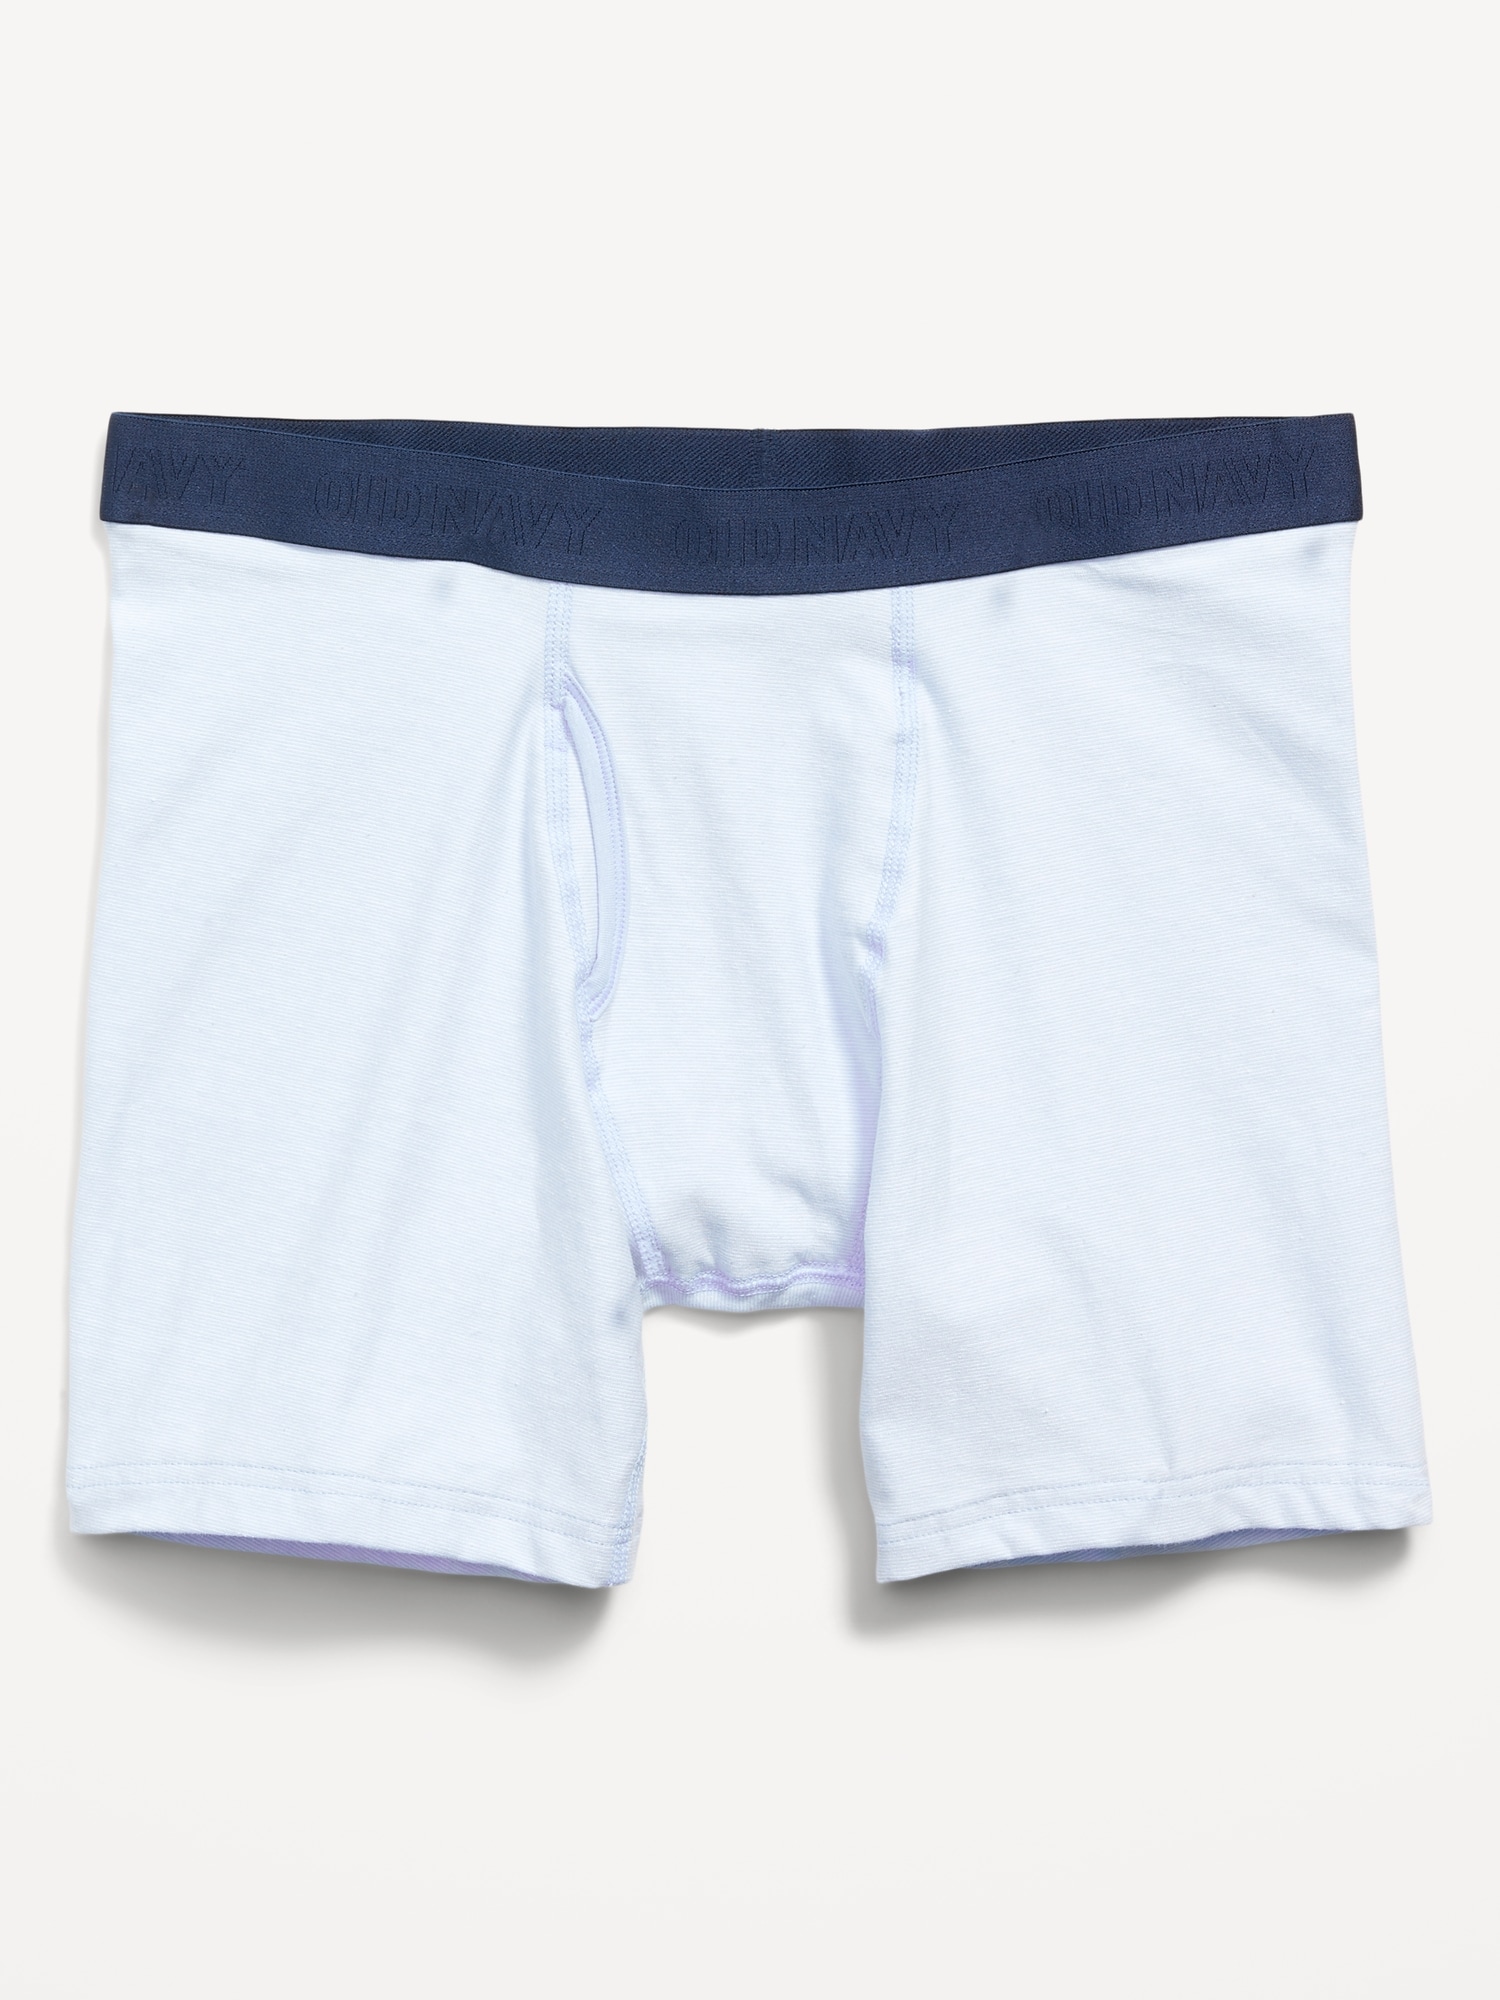 Old Navy Printed Built-In Flex Boxer-Briefs Underwear for Men -- 6.25-inch inseam blue. 1